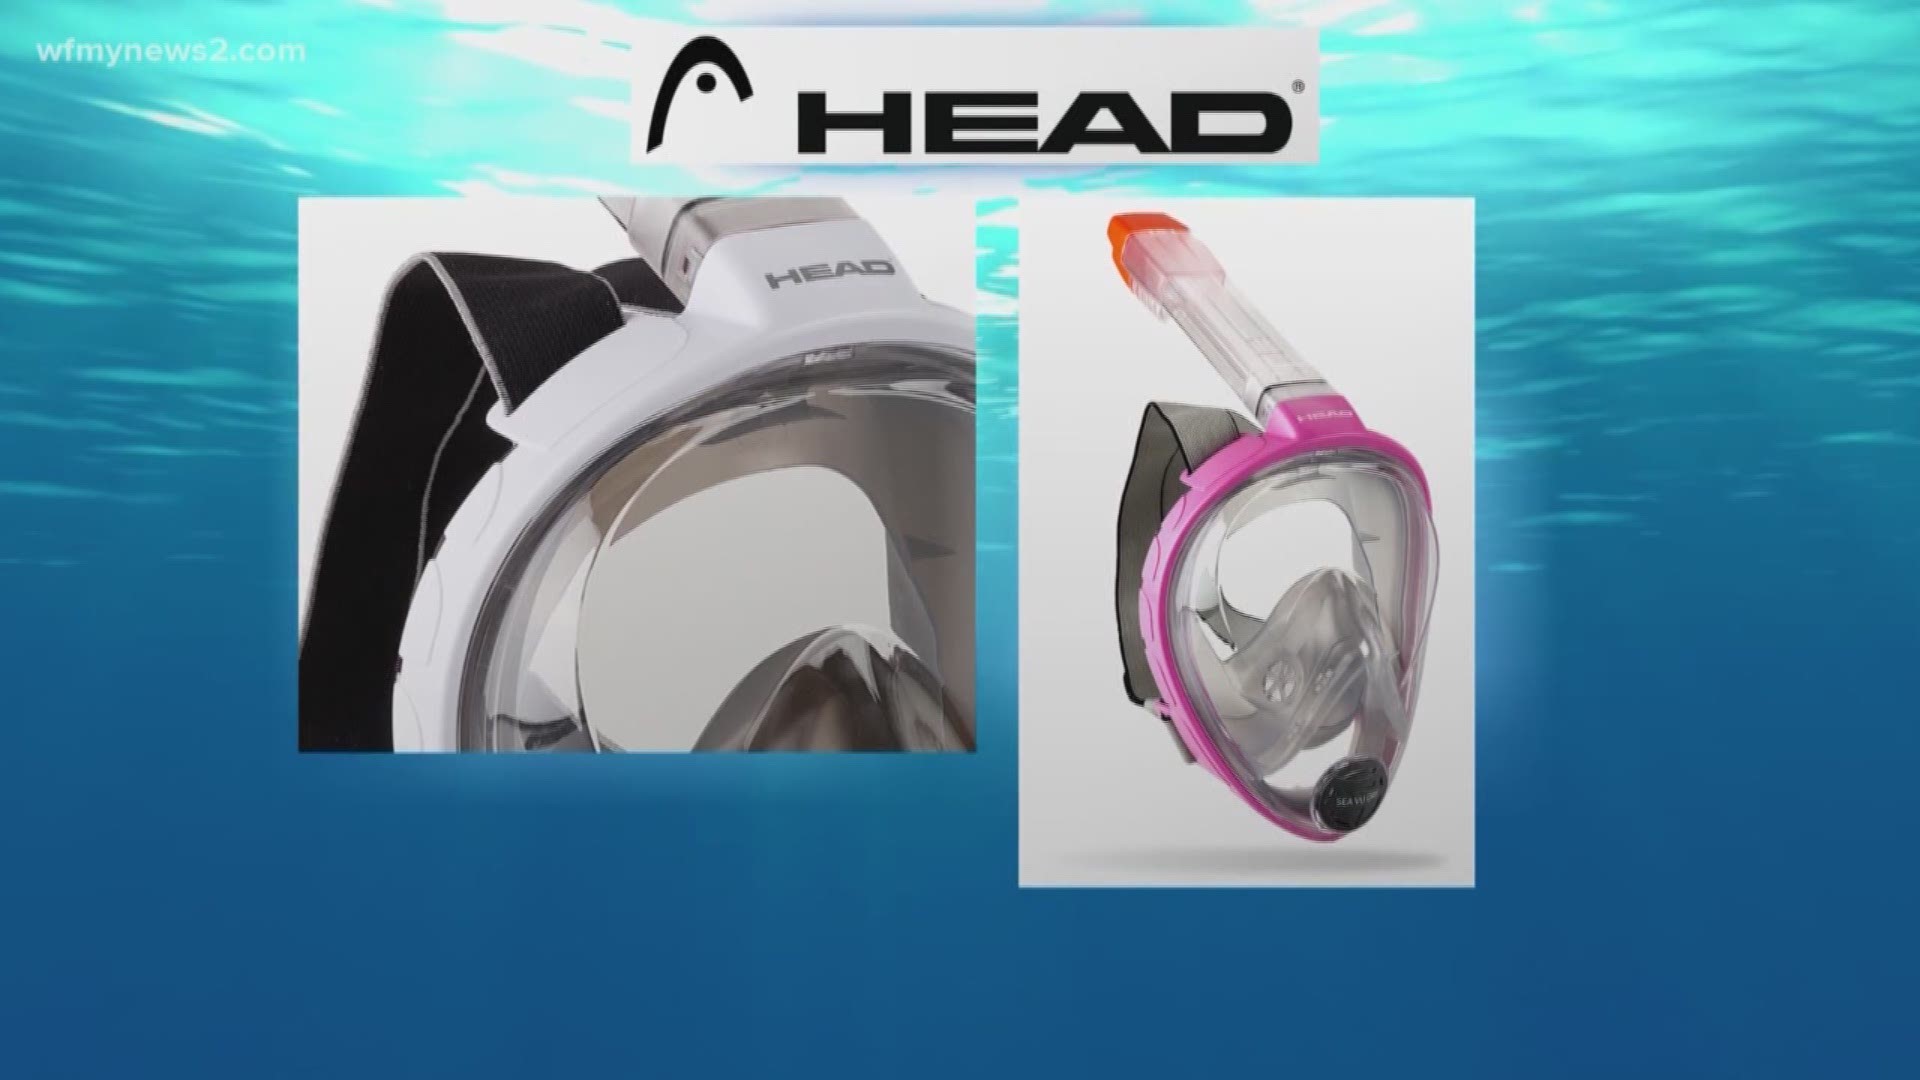 Full-Face Snorkel Masks Raise Safety Concerns